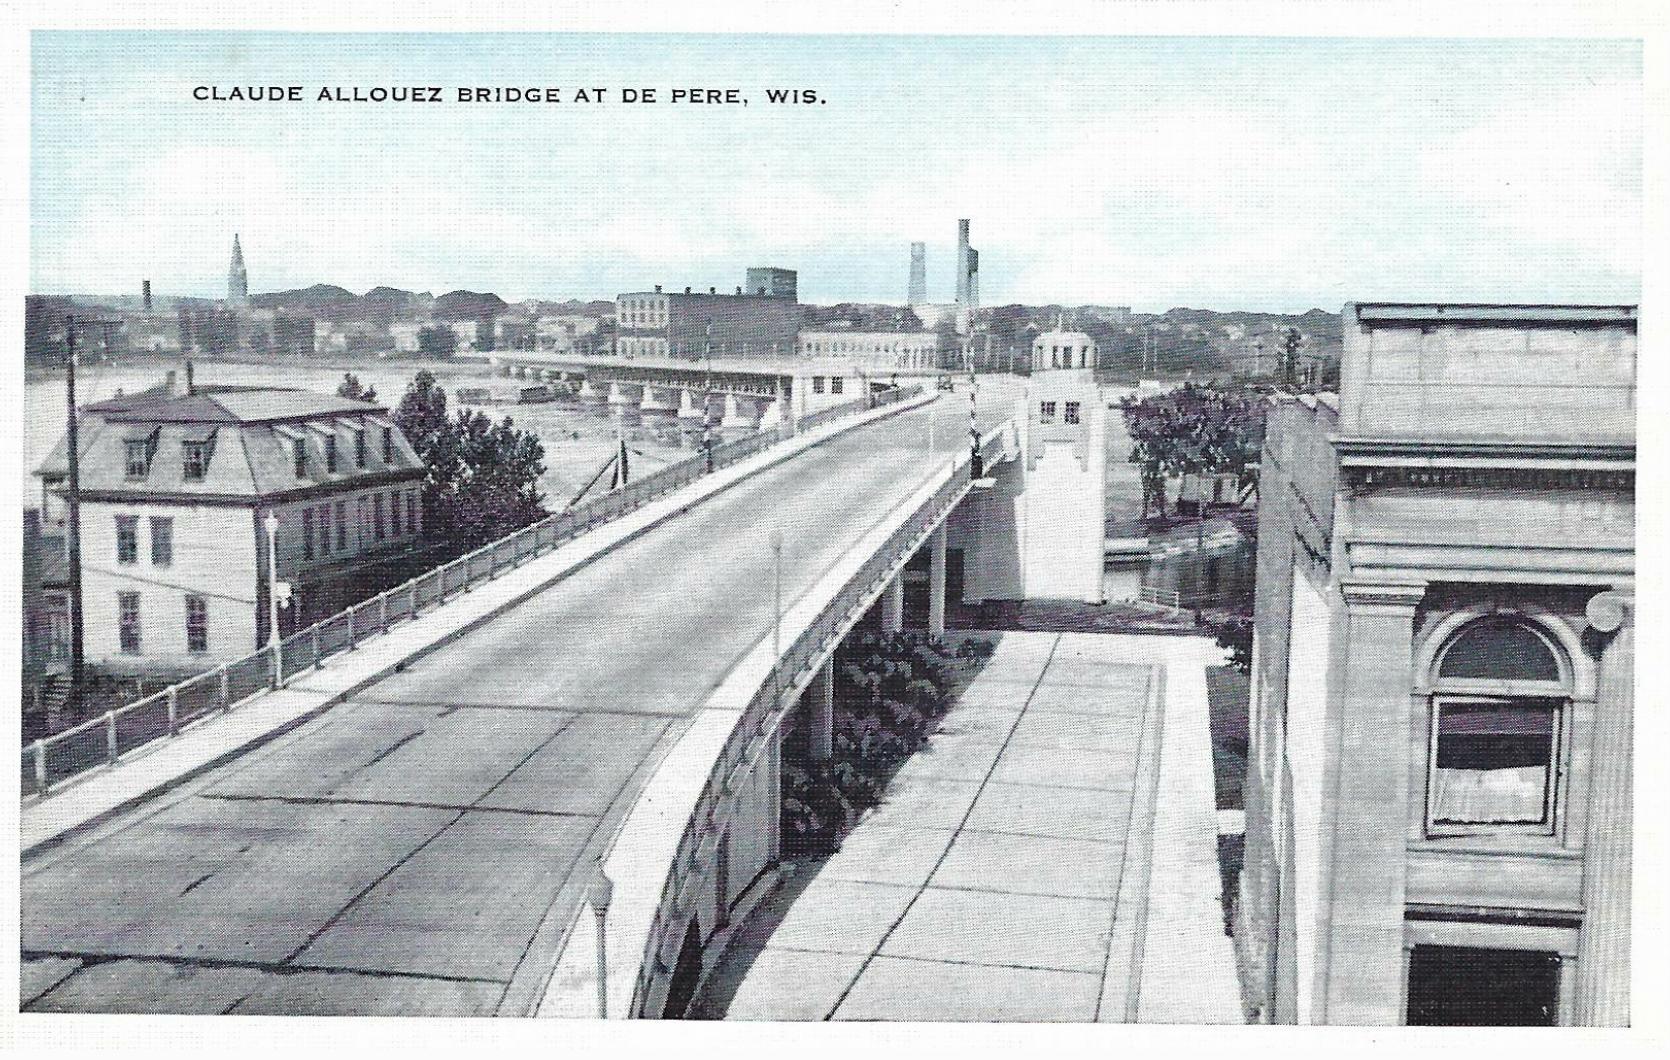 1934 - Claude Allouez Bridge, looking west